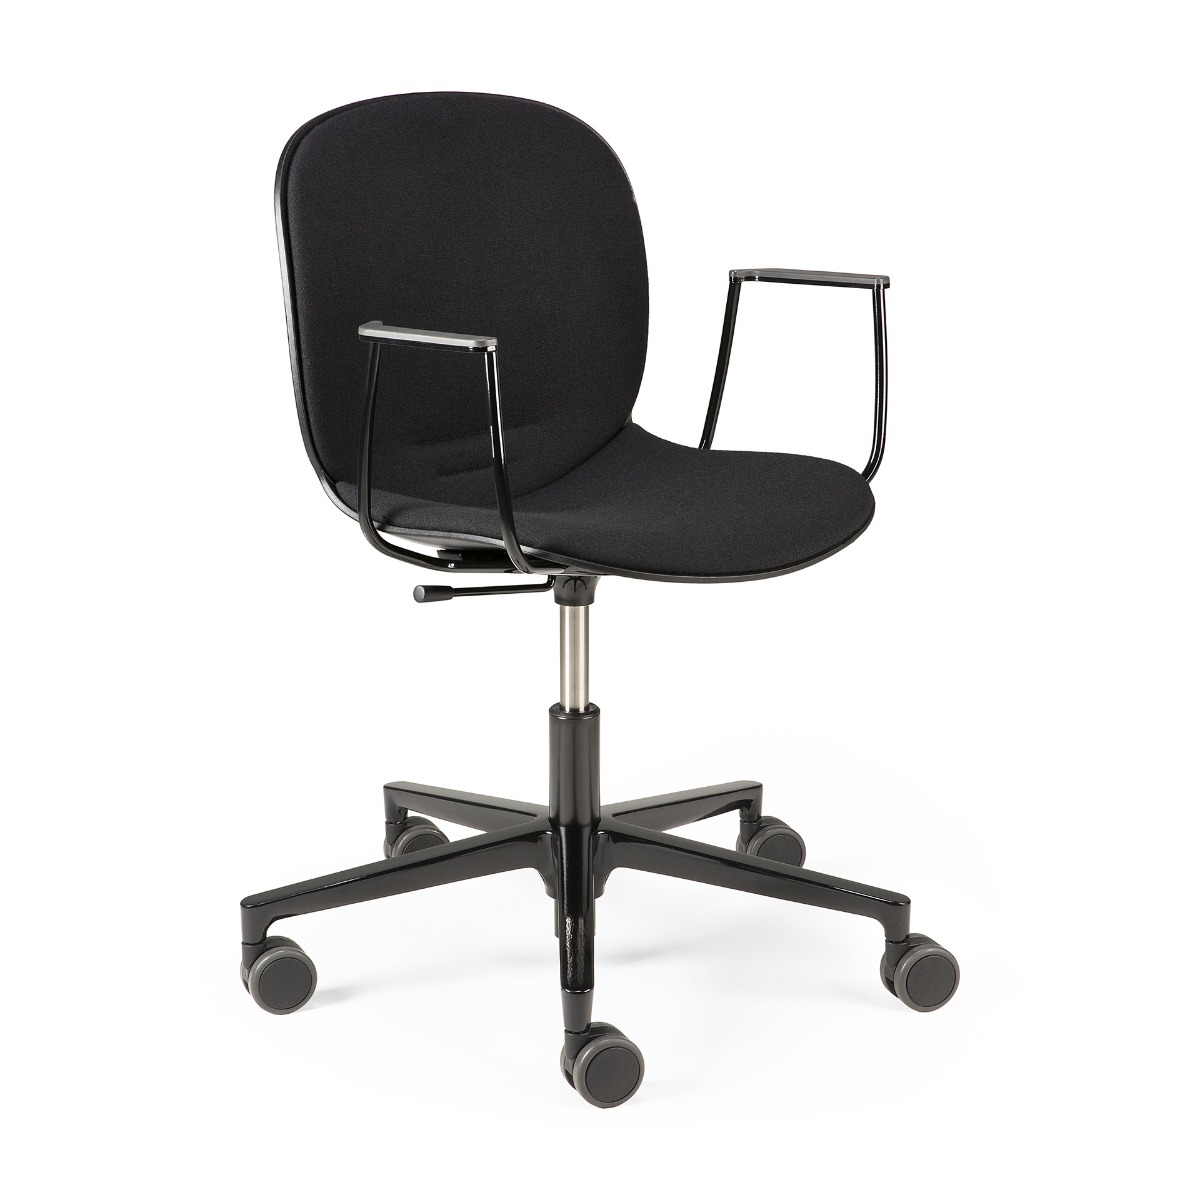 RBM Noor office chair in black